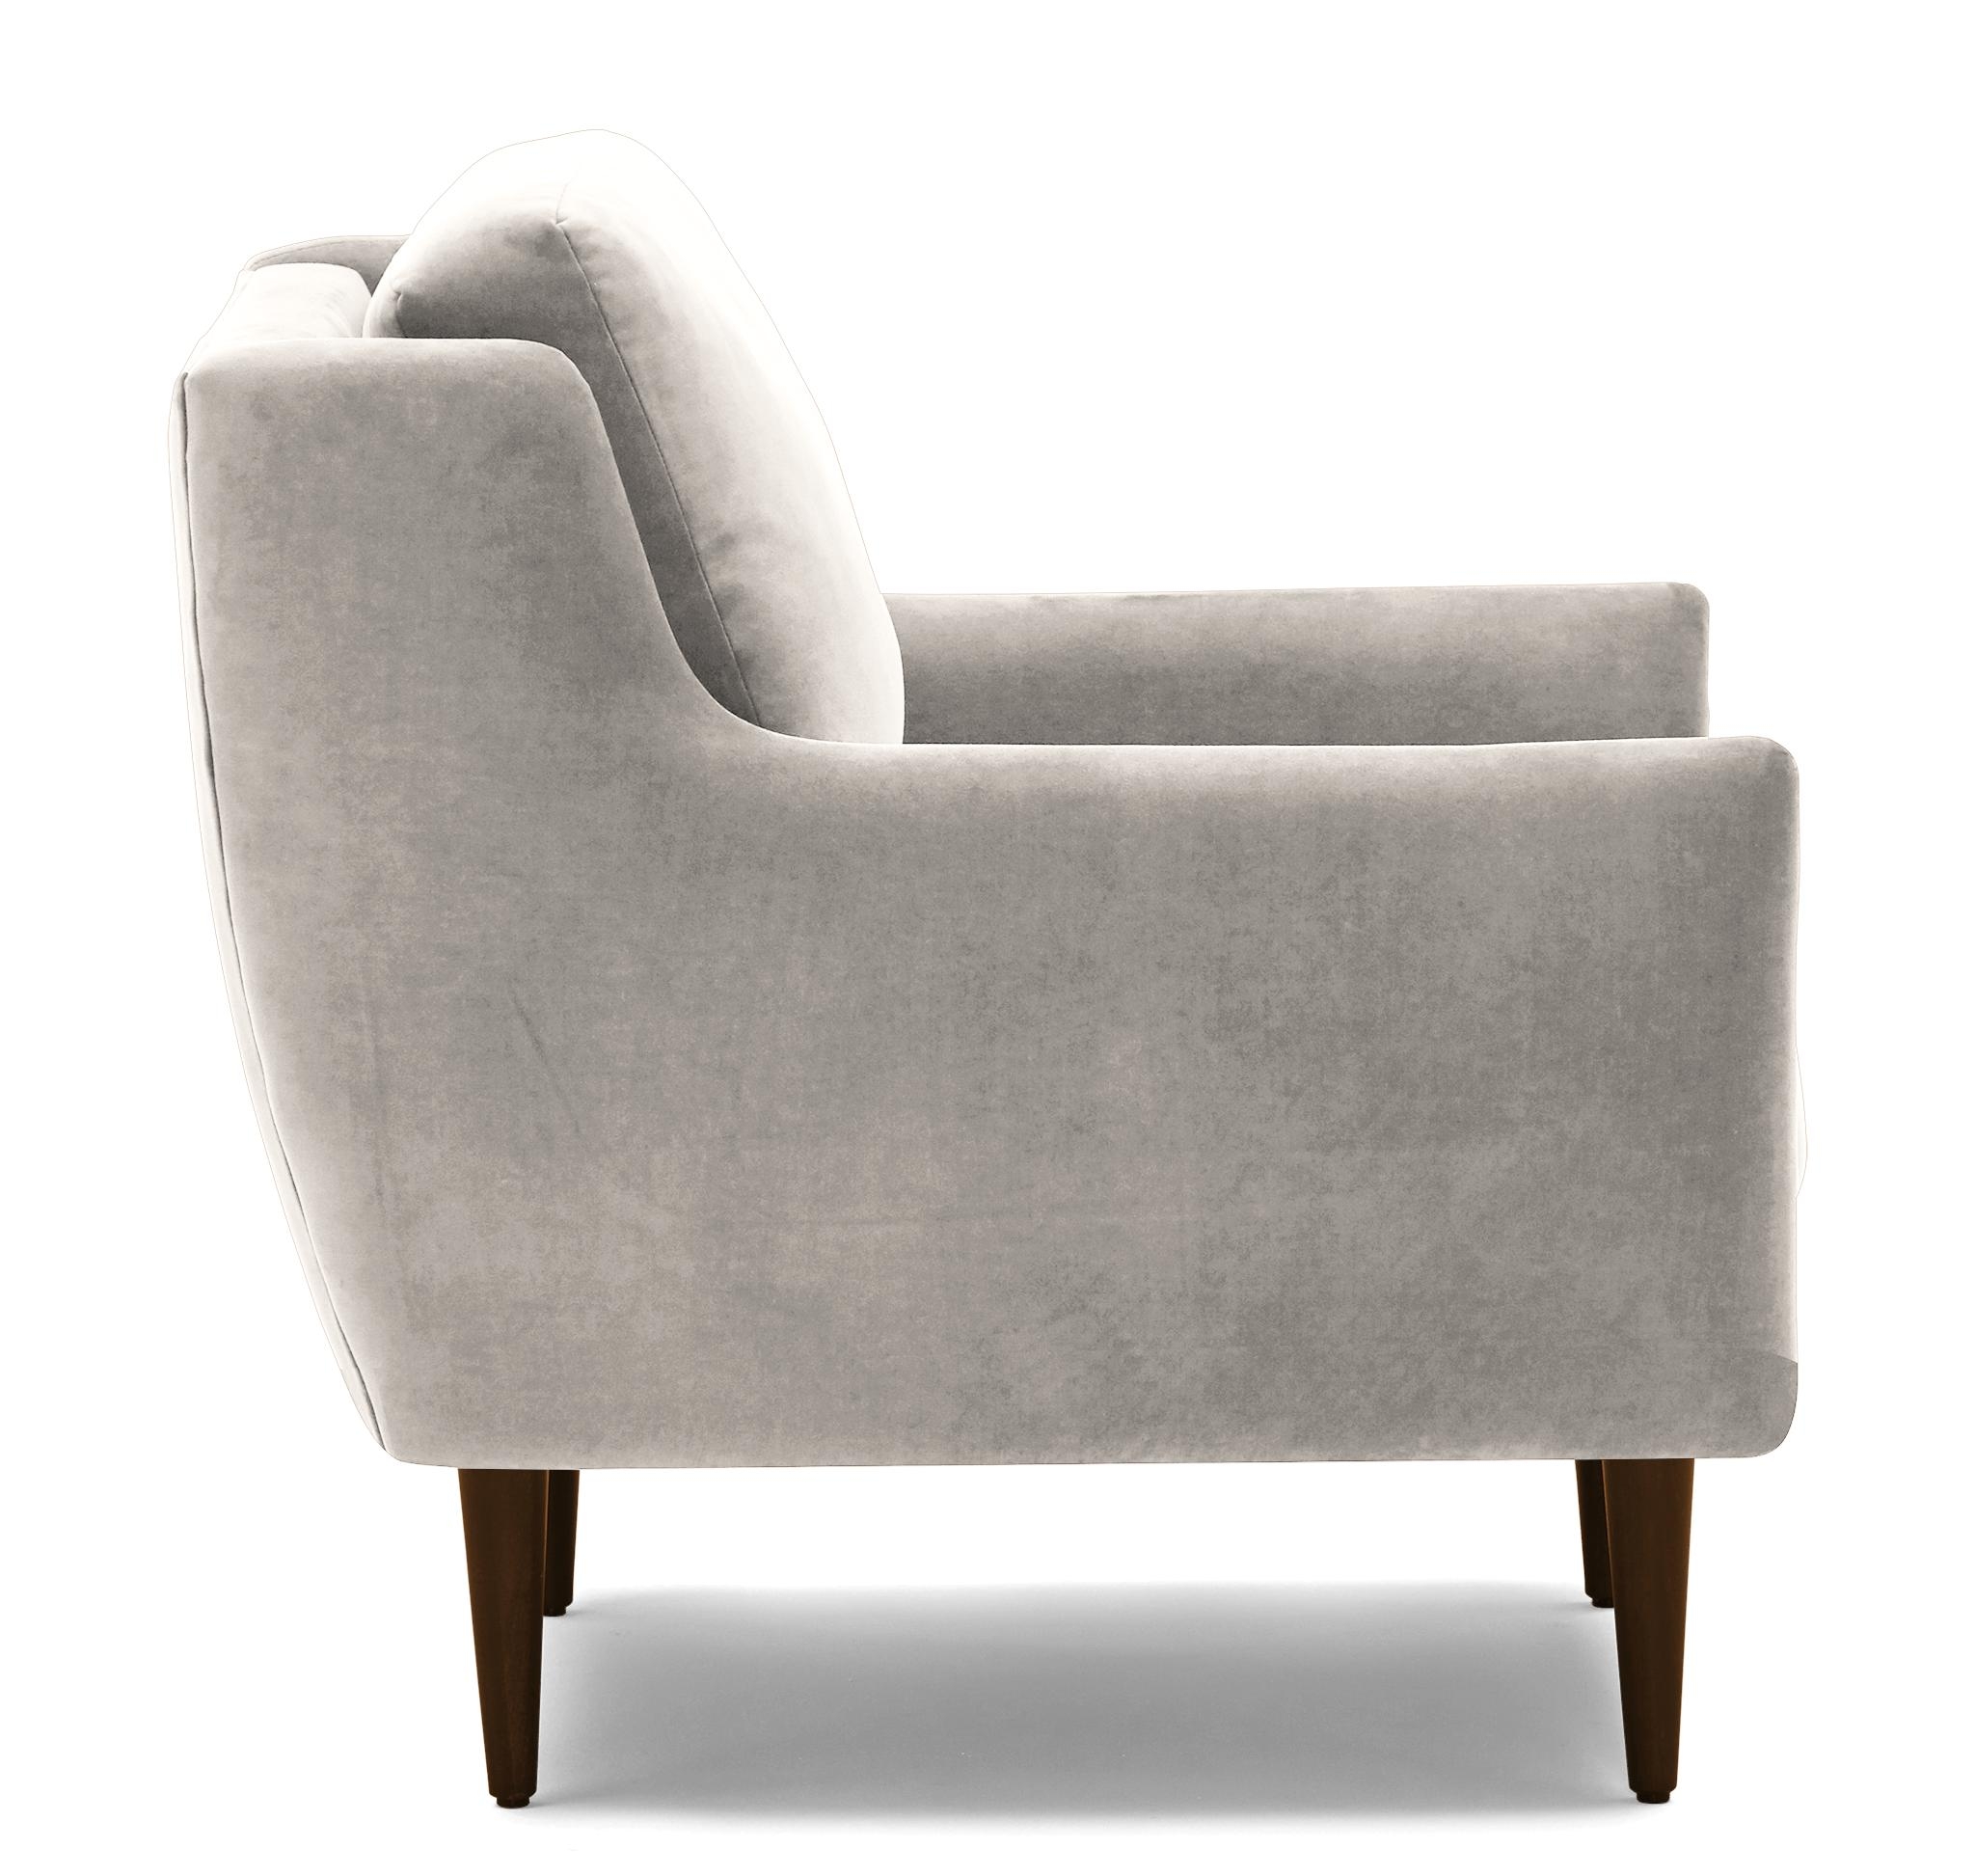 Beige/White Bell Mid Century Modern Chair - Merit Dove - Mocha - Image 2